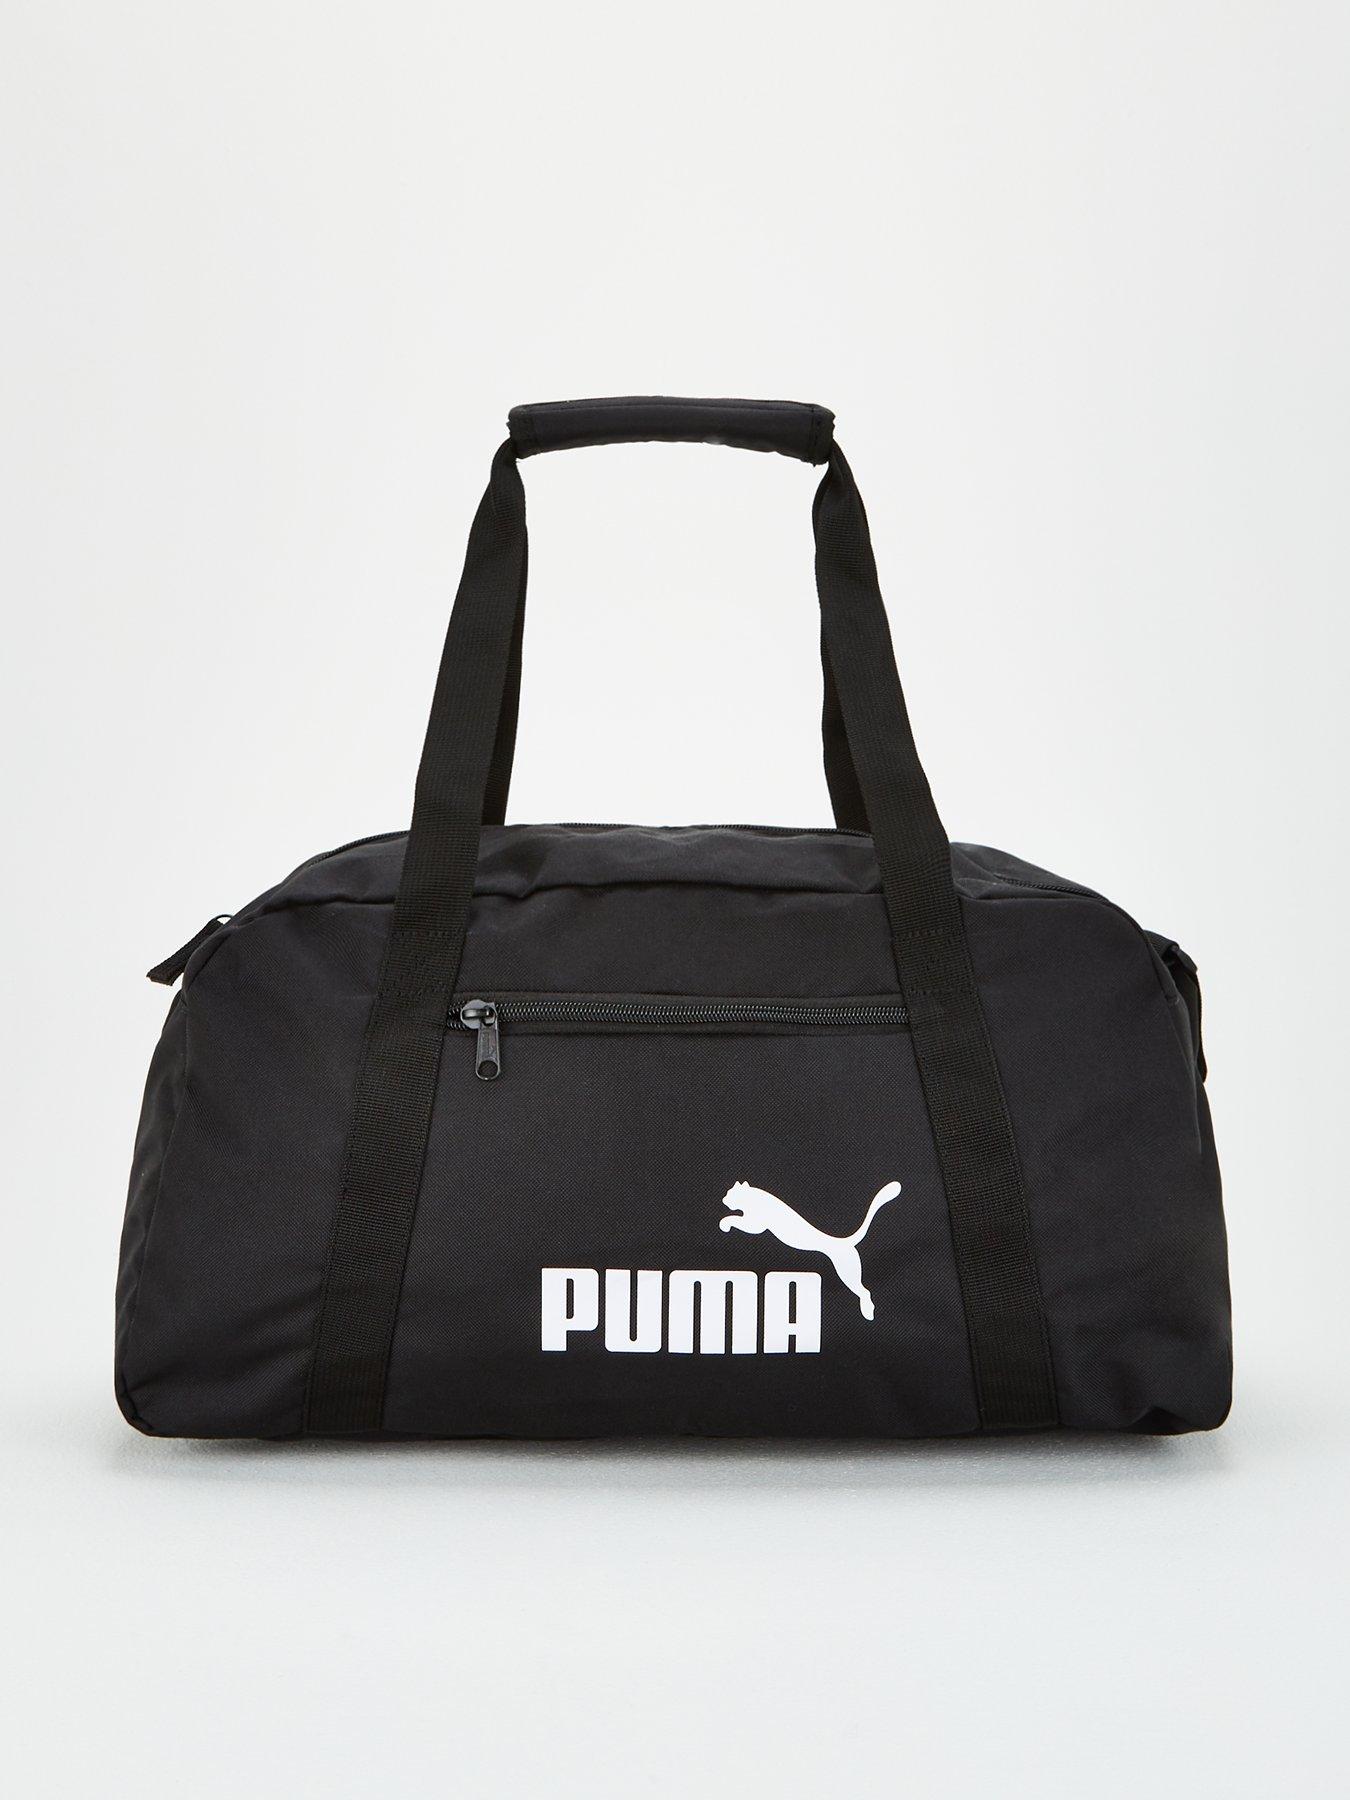 puma sports bag uk